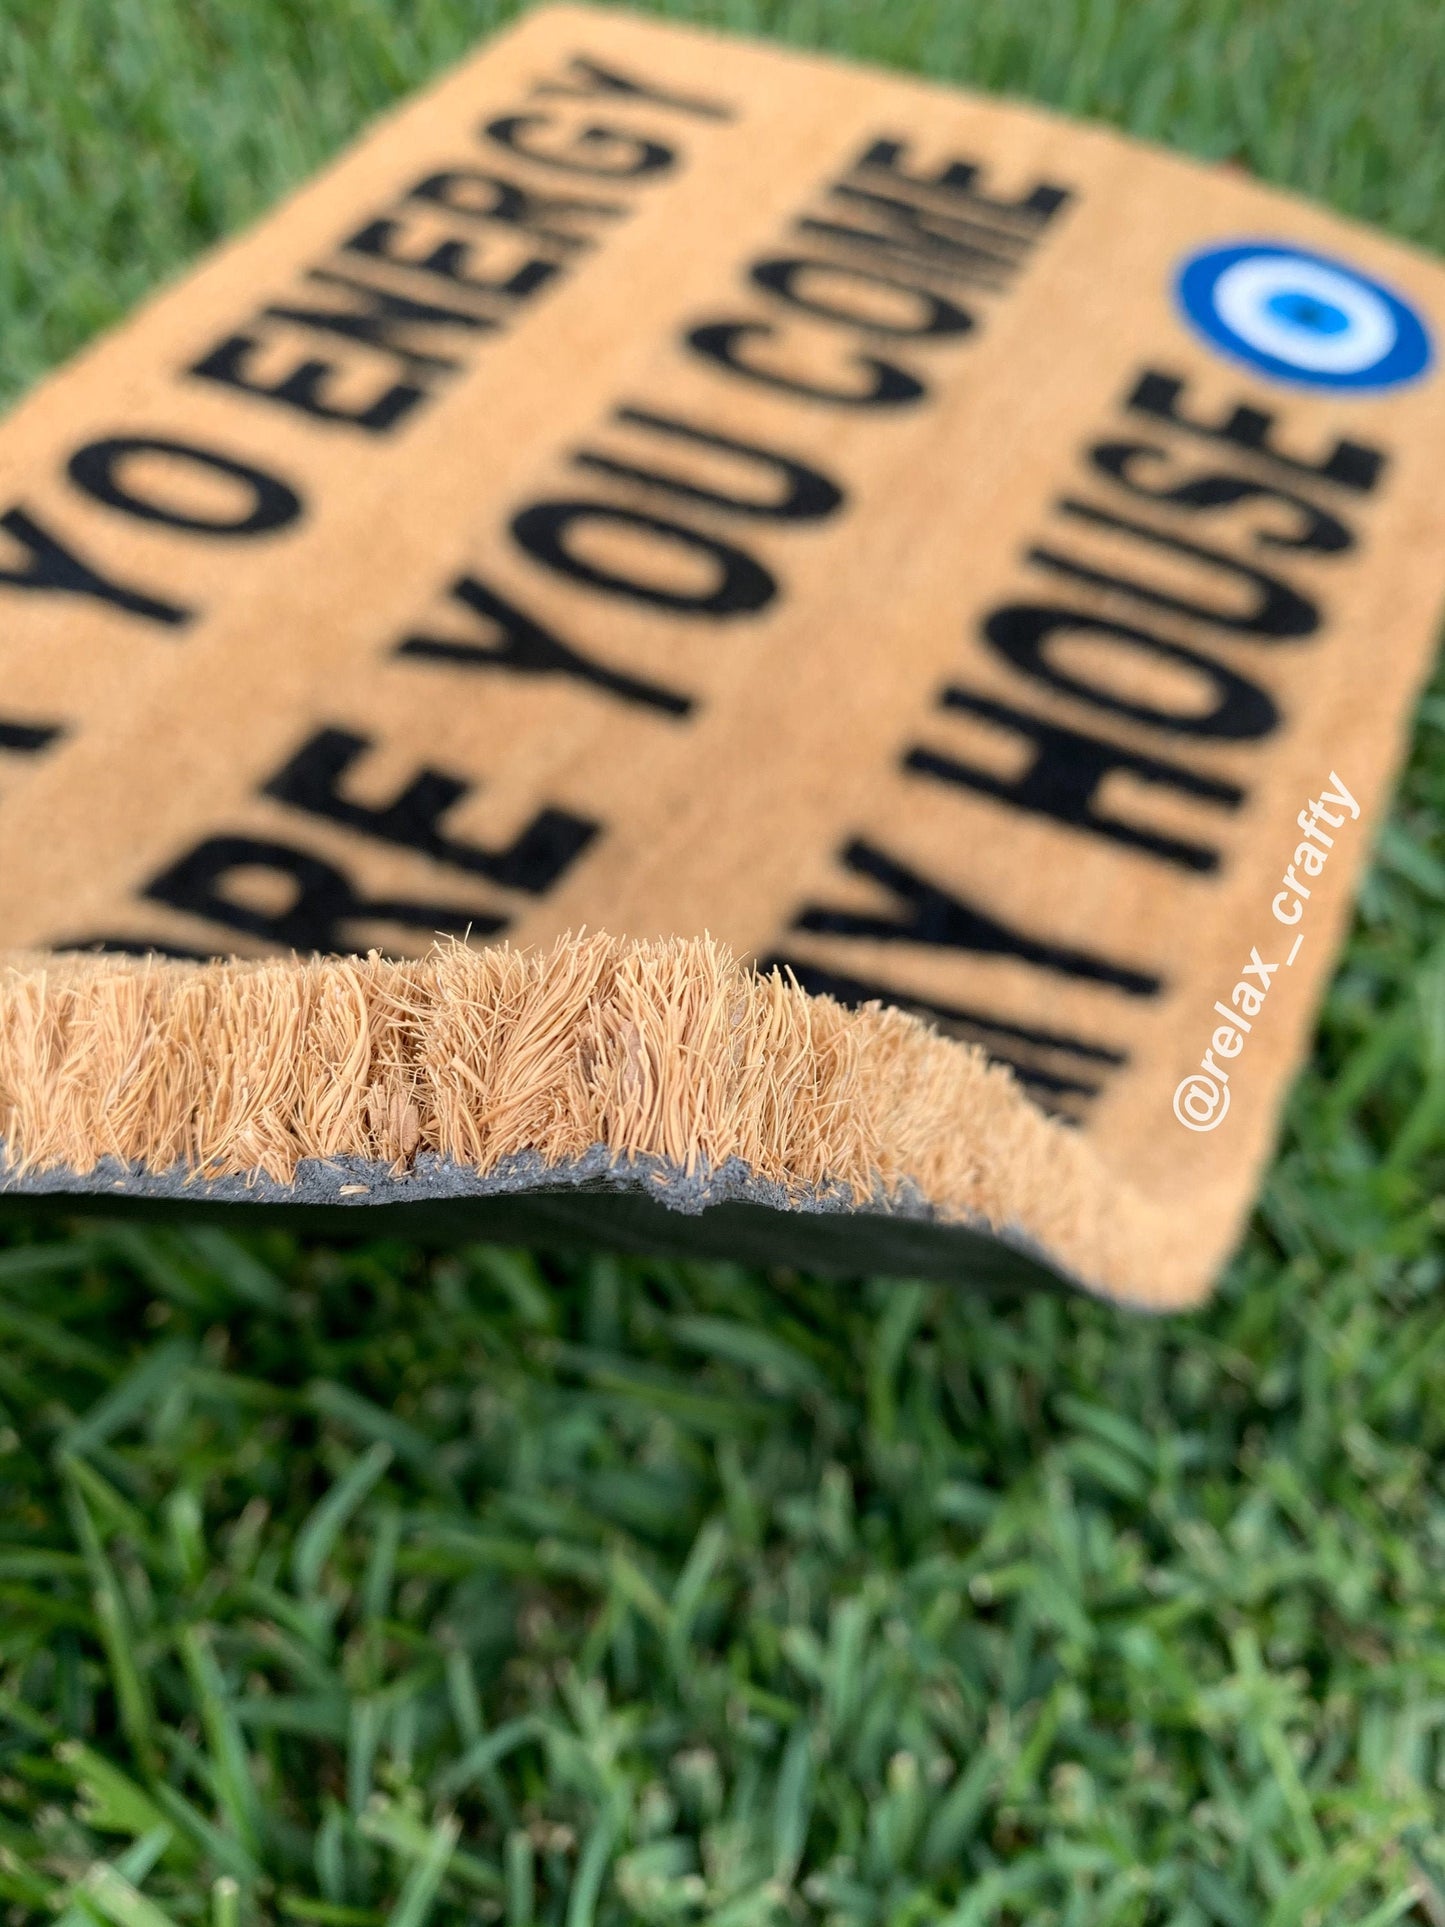 Check Yo Energy Doormat | Evil Eye Doormat